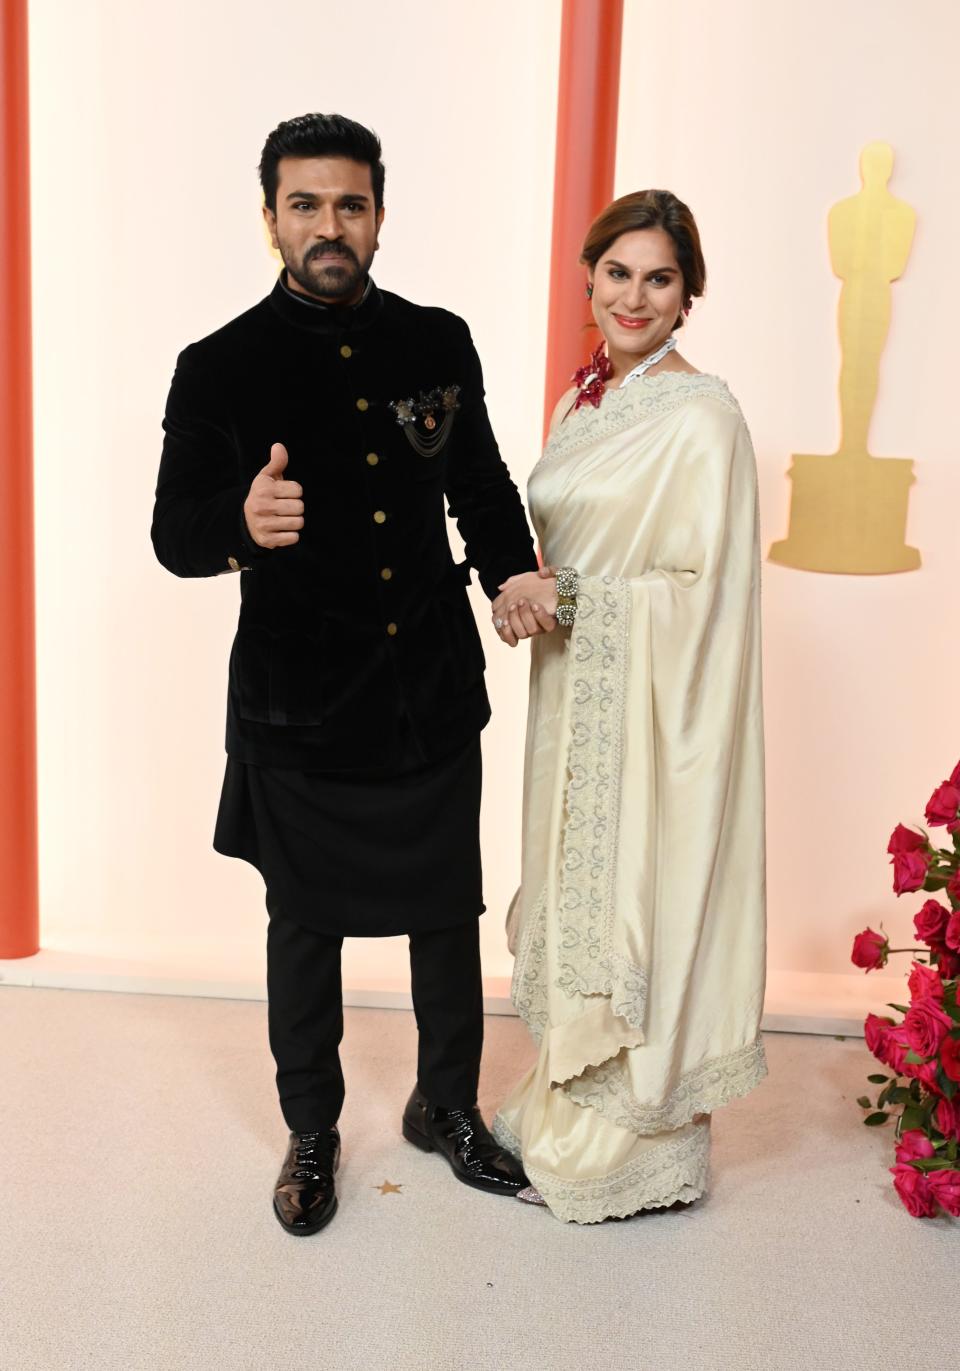 Ram Charan and Upasana Kamineni attend the 2023 Academy Awards.